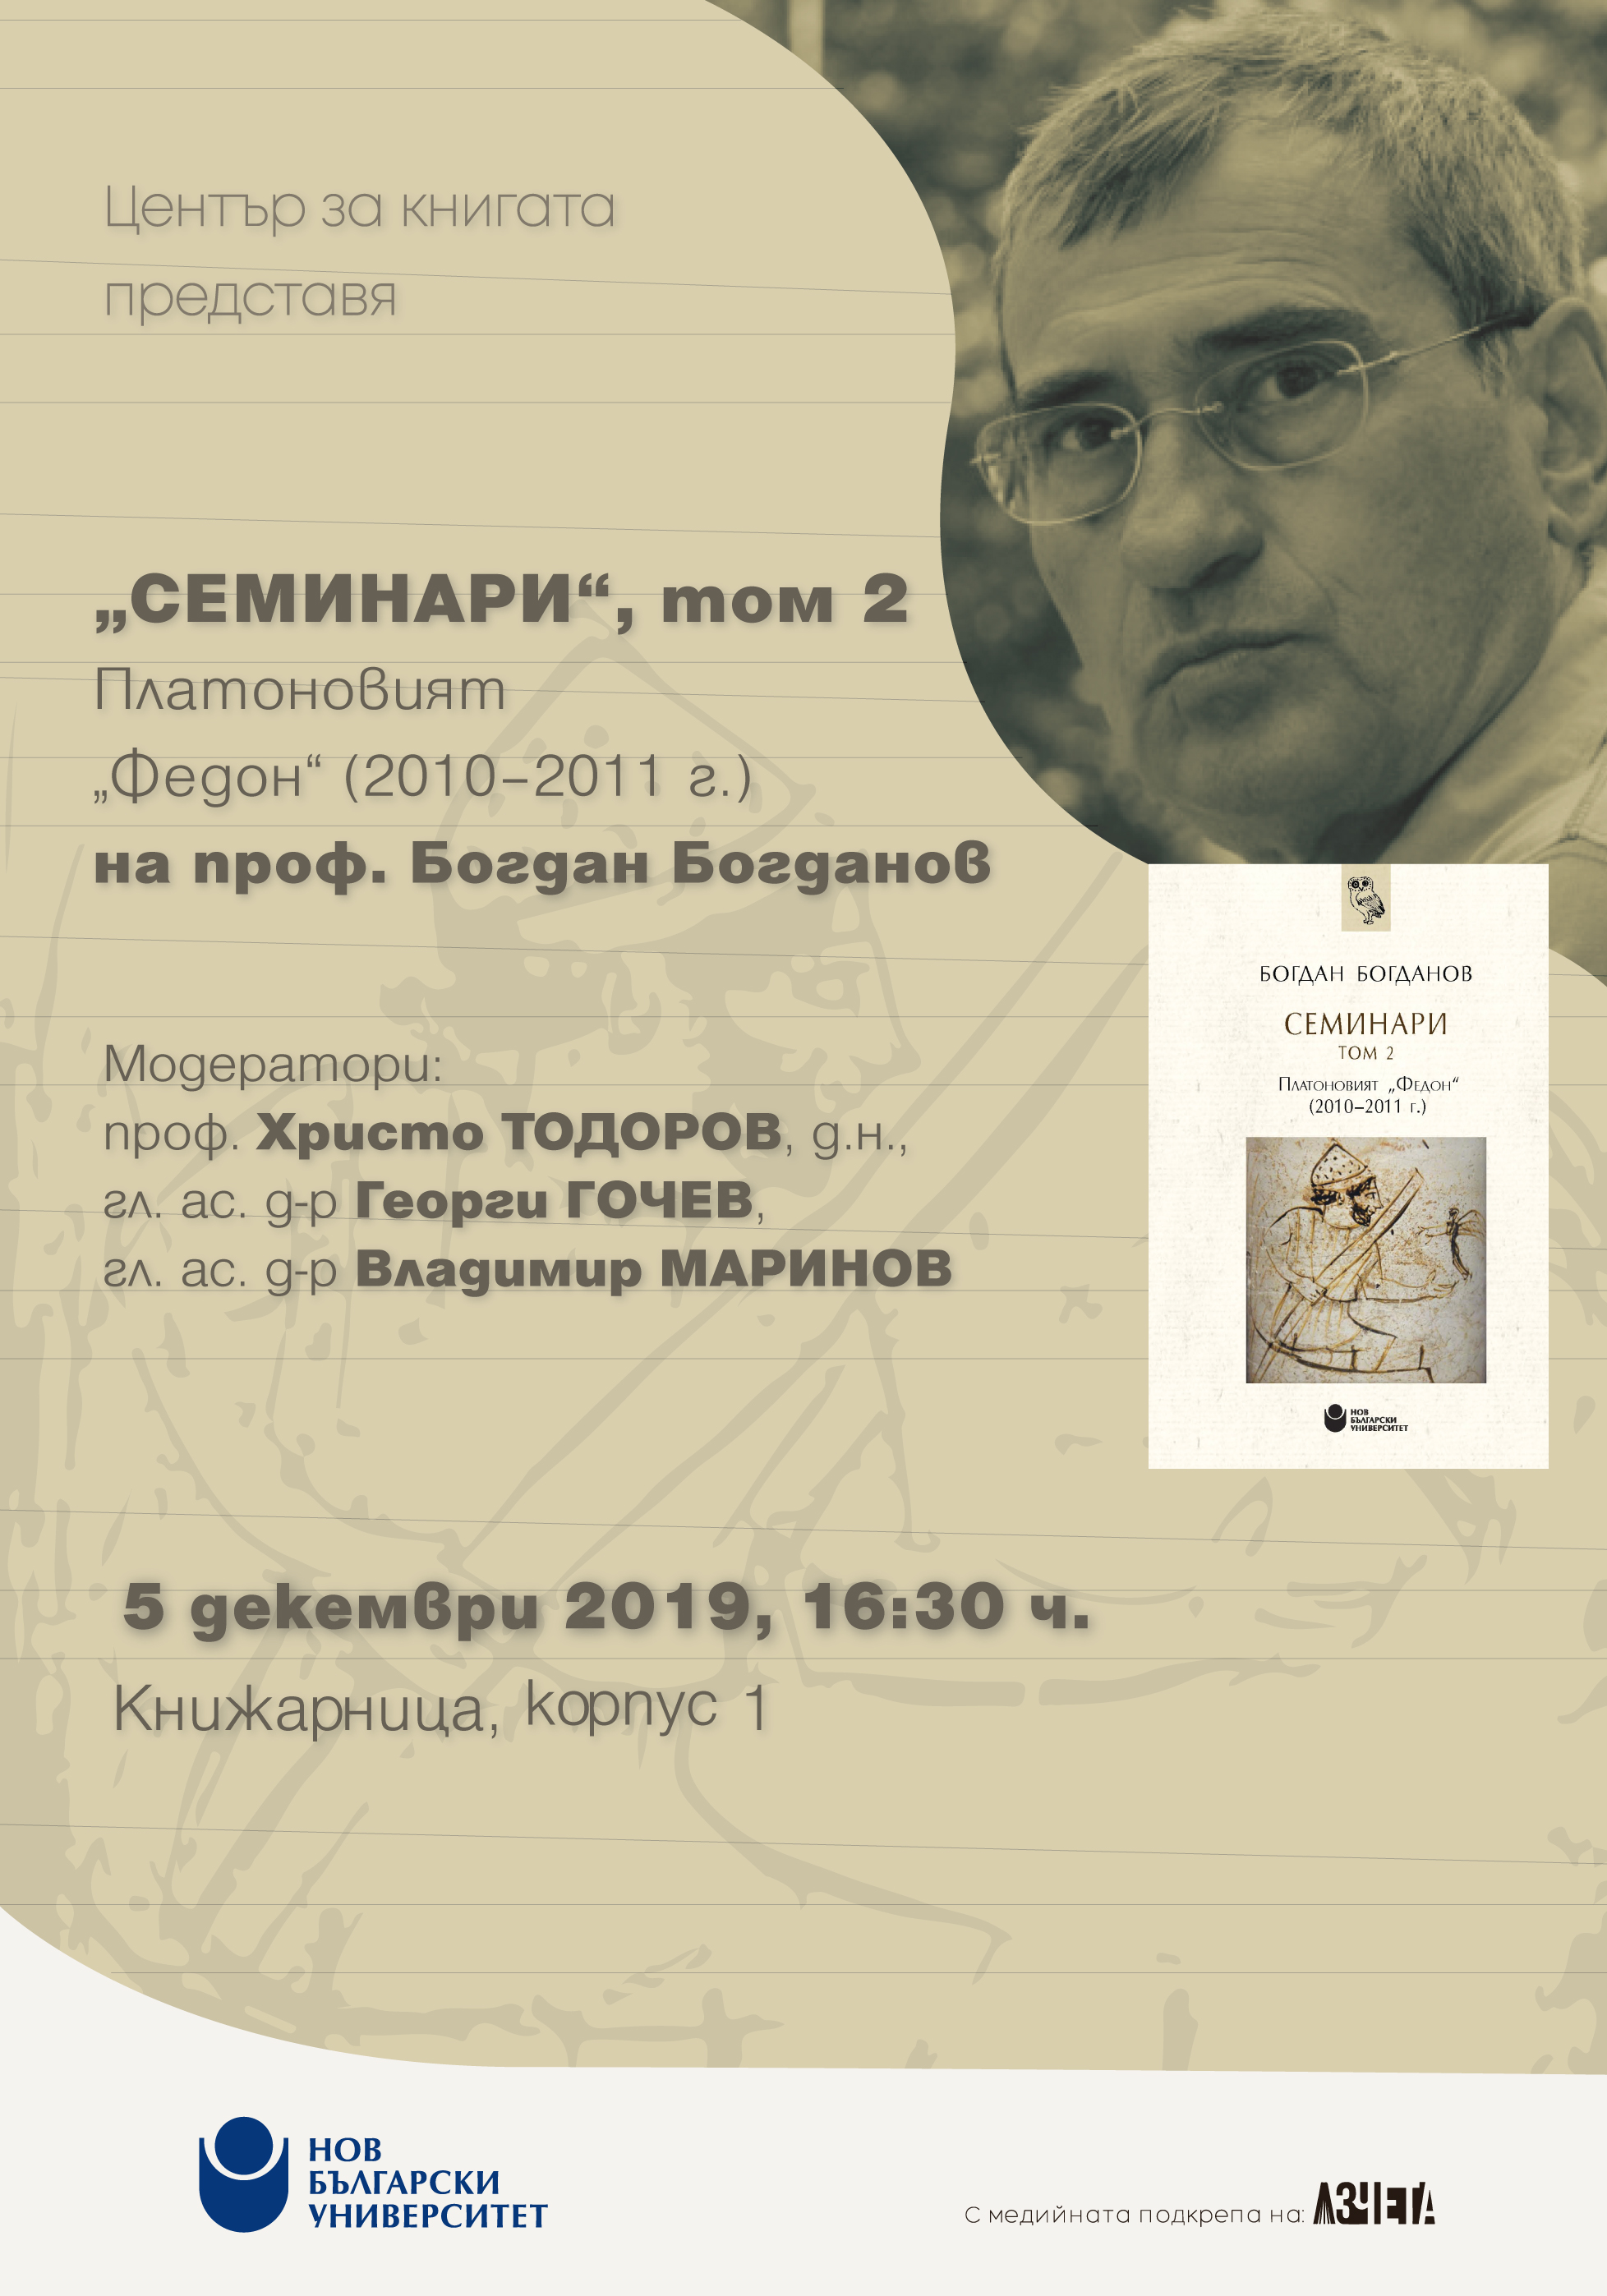 Представяне на „Семинари: Т. 2.: Платоновият „Федон“: (2010-2011 г.)“ от проф. Богдан Богданов